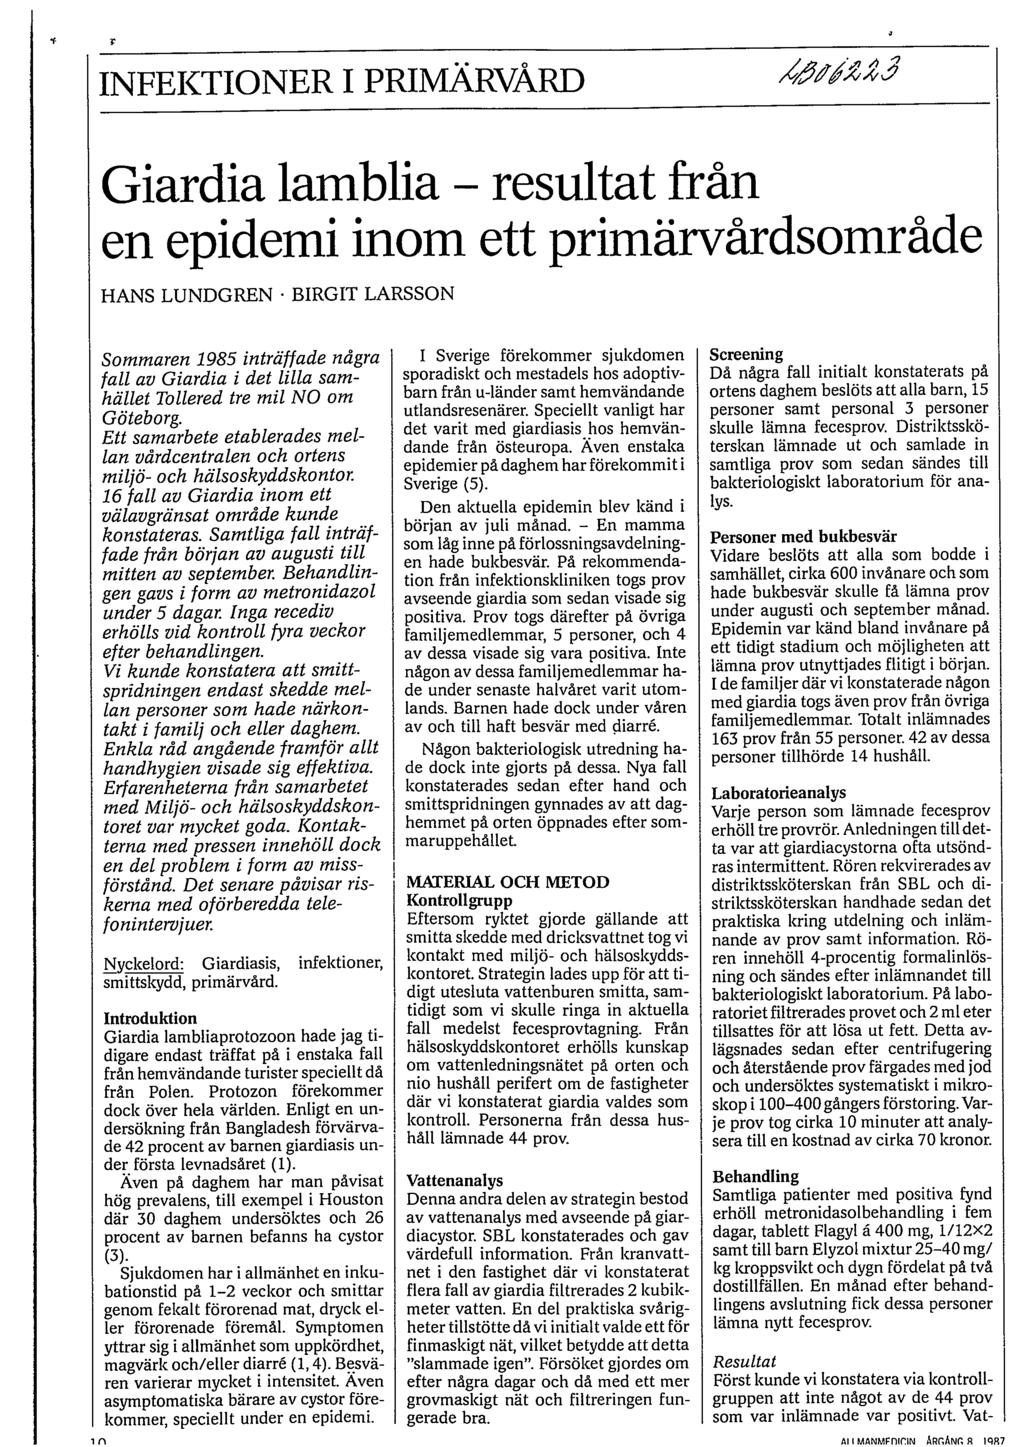 INFEKTIONER I PRIMÄRVÅRD /Zj7zZ*Z; 4 Giardia lamblia - resultat från en epidemi inom ett primärvårdsområde HANS LUNDGREN.